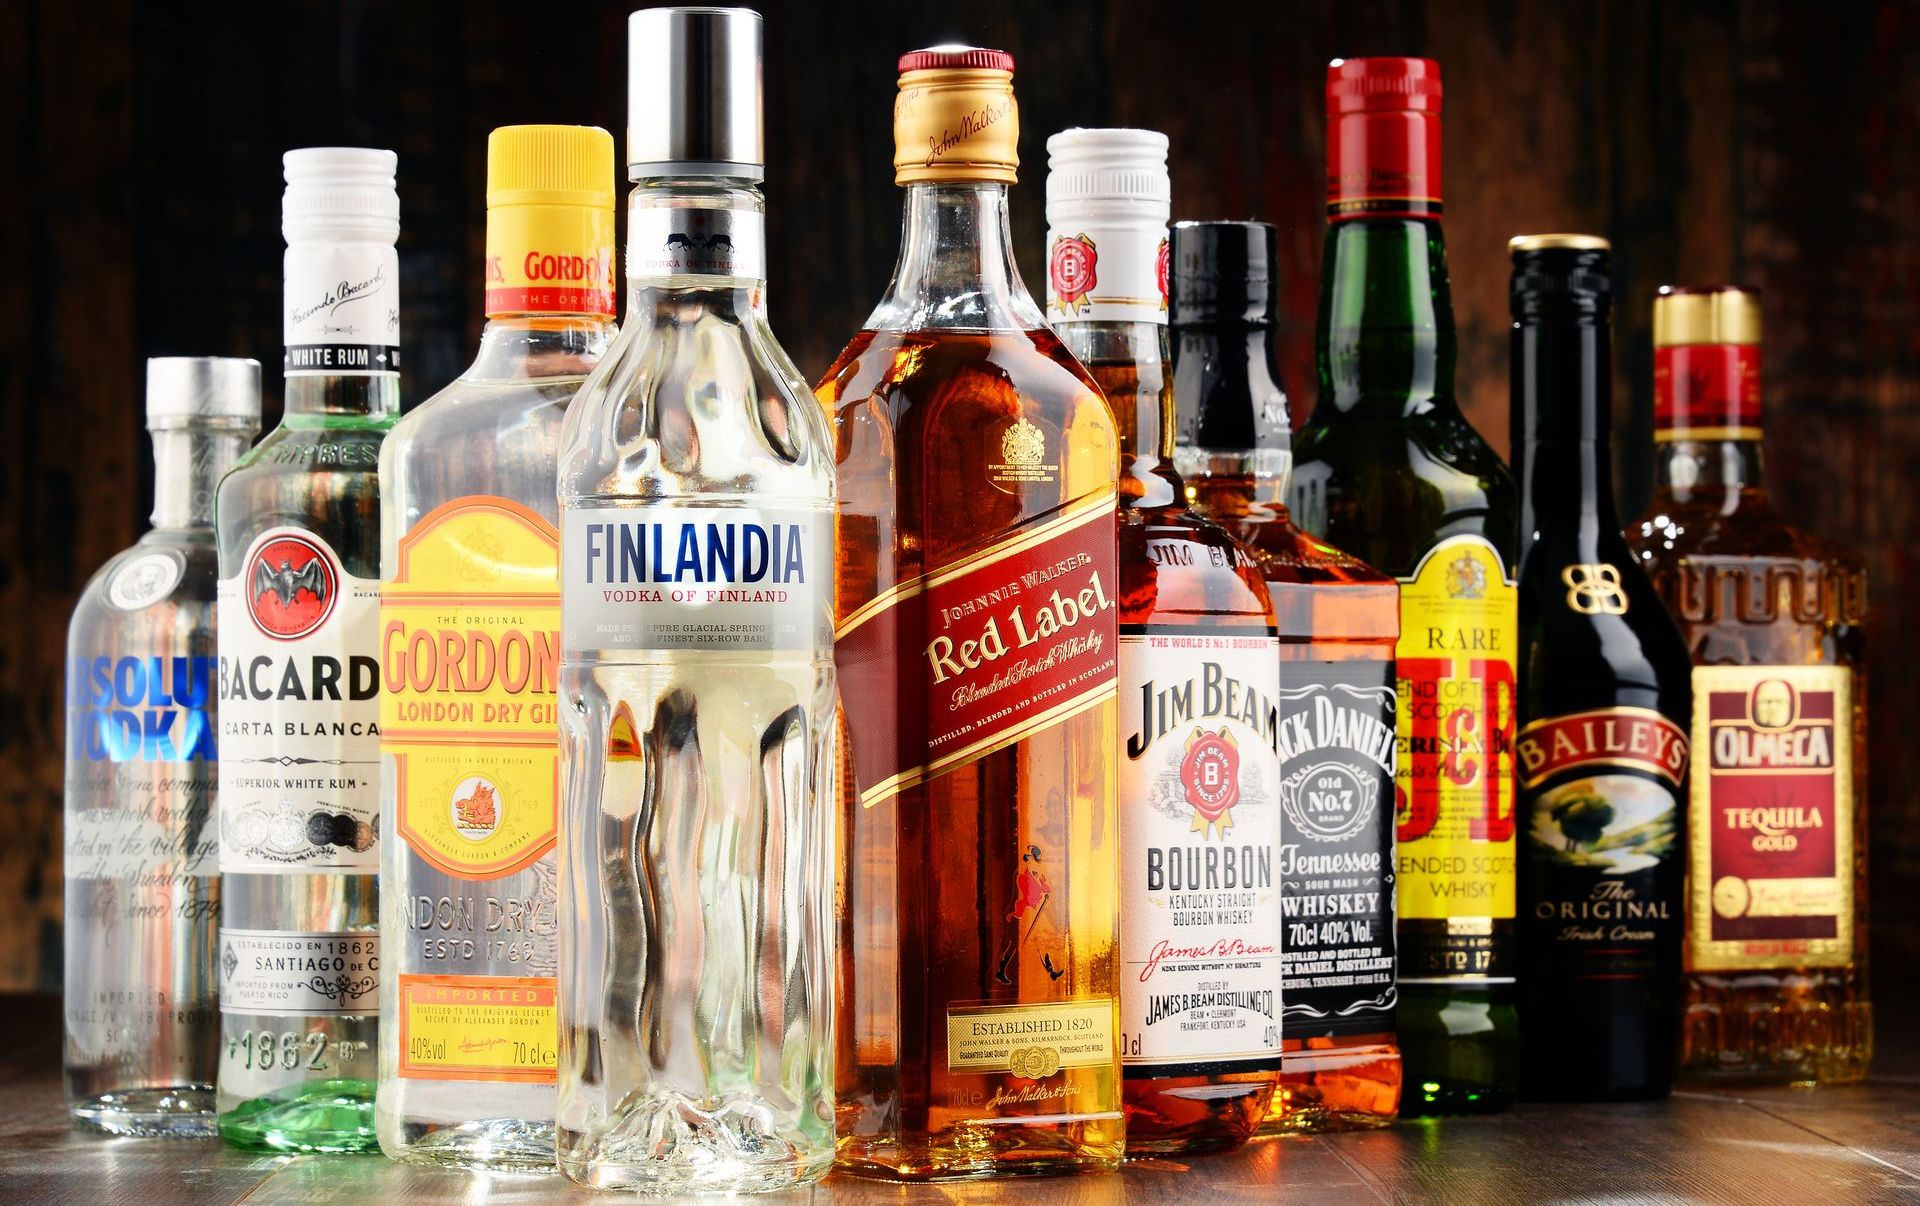 Badanie wyjaśniał, jak alkohol uszkadza DNA i zwiększa ryzyko zachorowania na raka